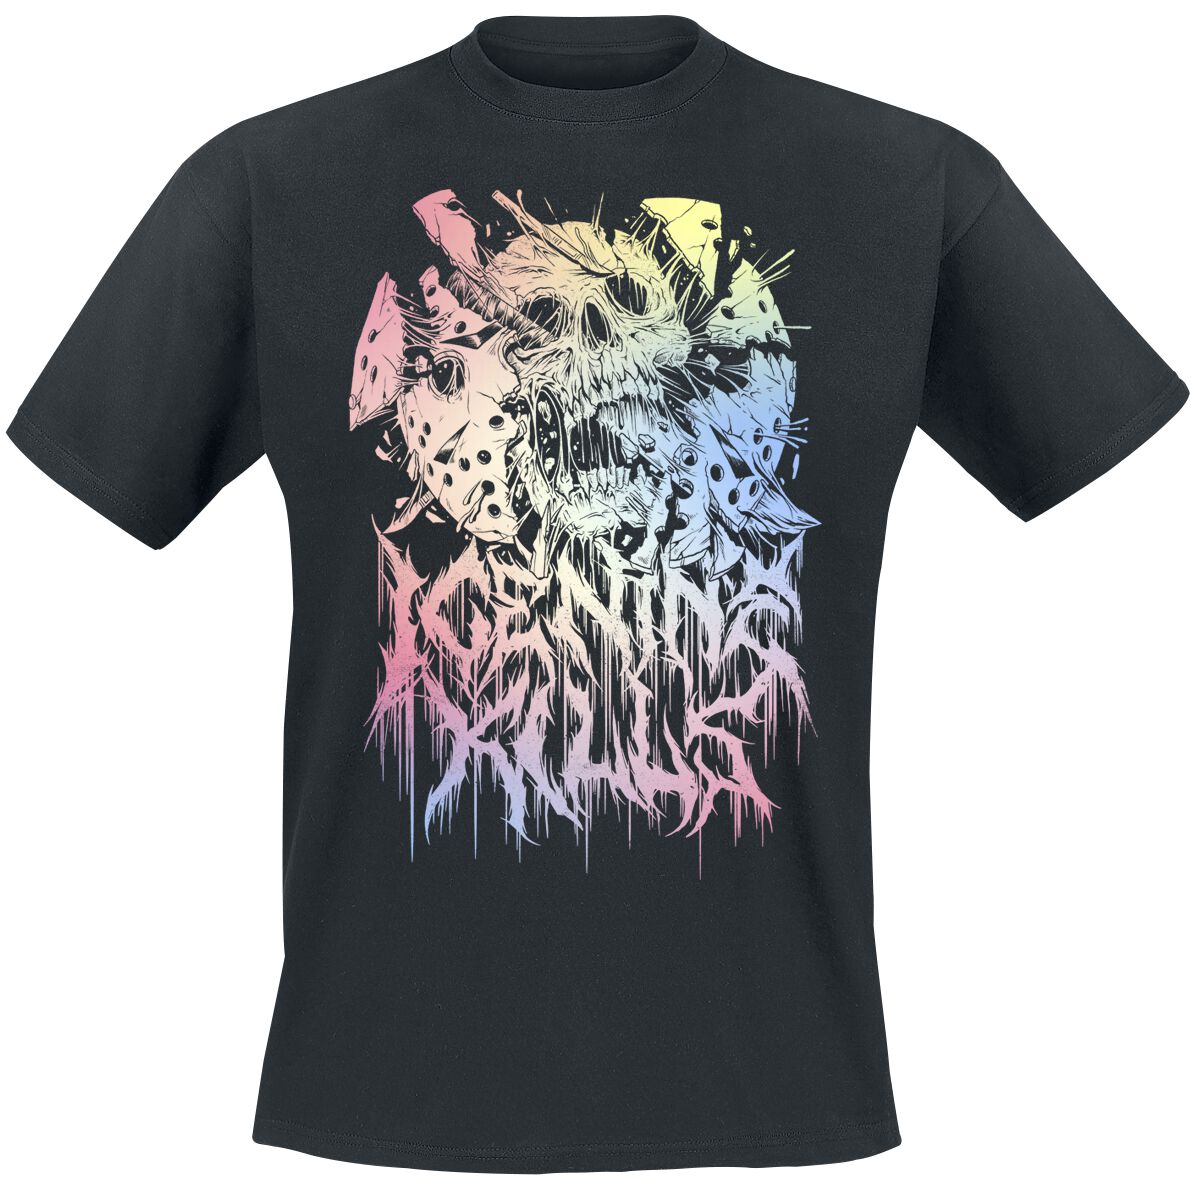 Ice Nine Kills T-Shirt - Pastel Skull - M bis 4XL - für Männer - Größe 3XL - schwarz  - Lizenziertes Merchandise!